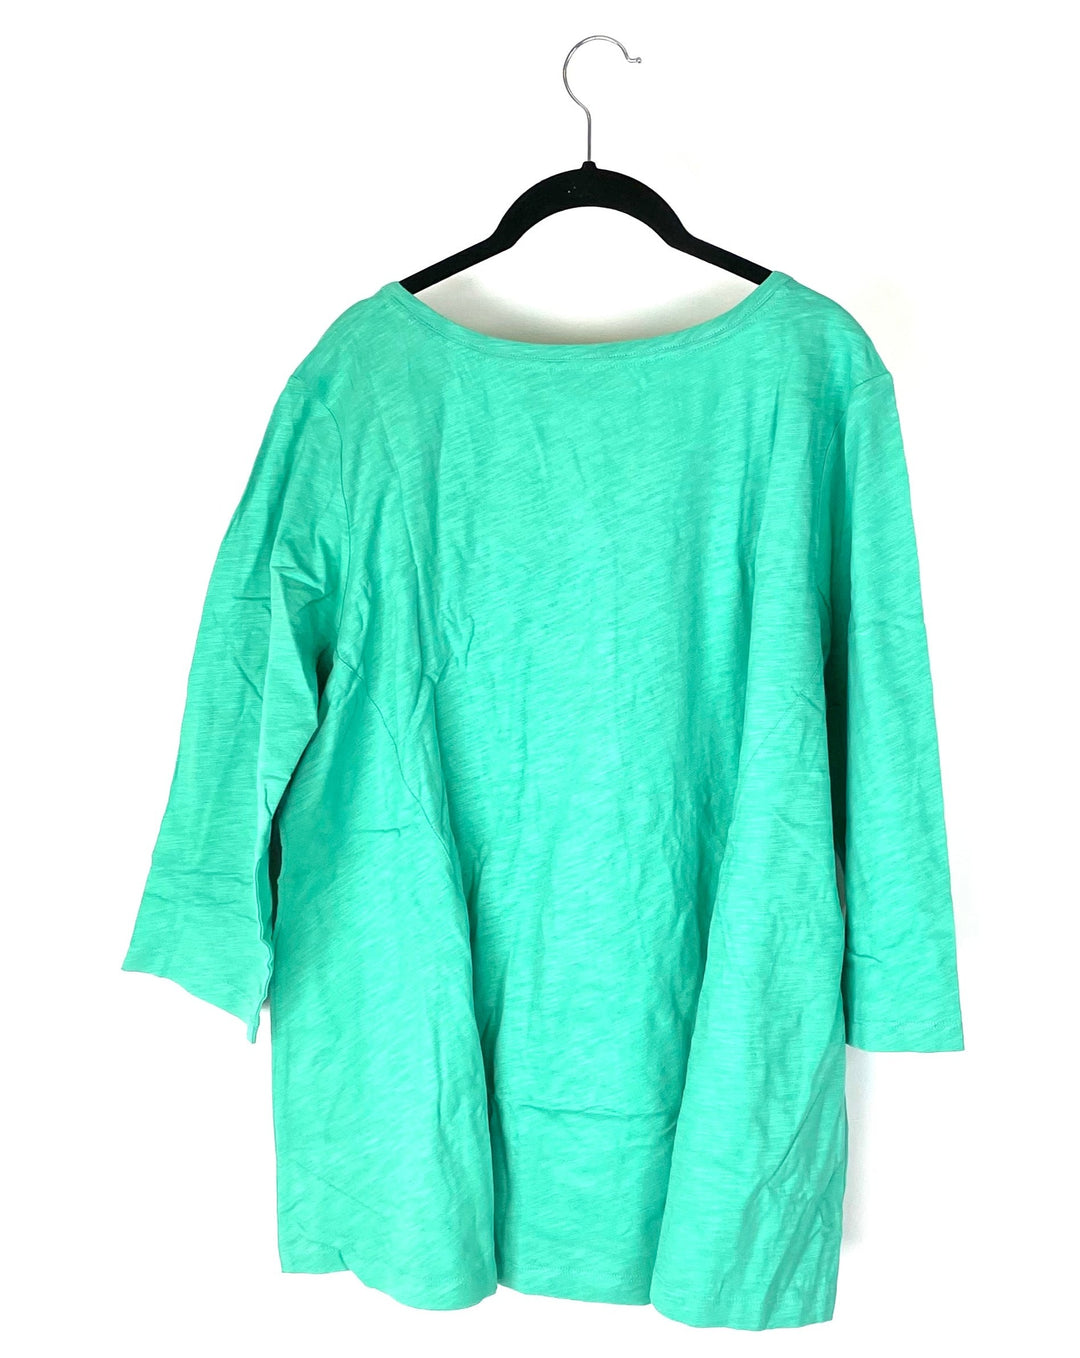 Turquoise Quarter Sleeve Long Sleeve - 1X